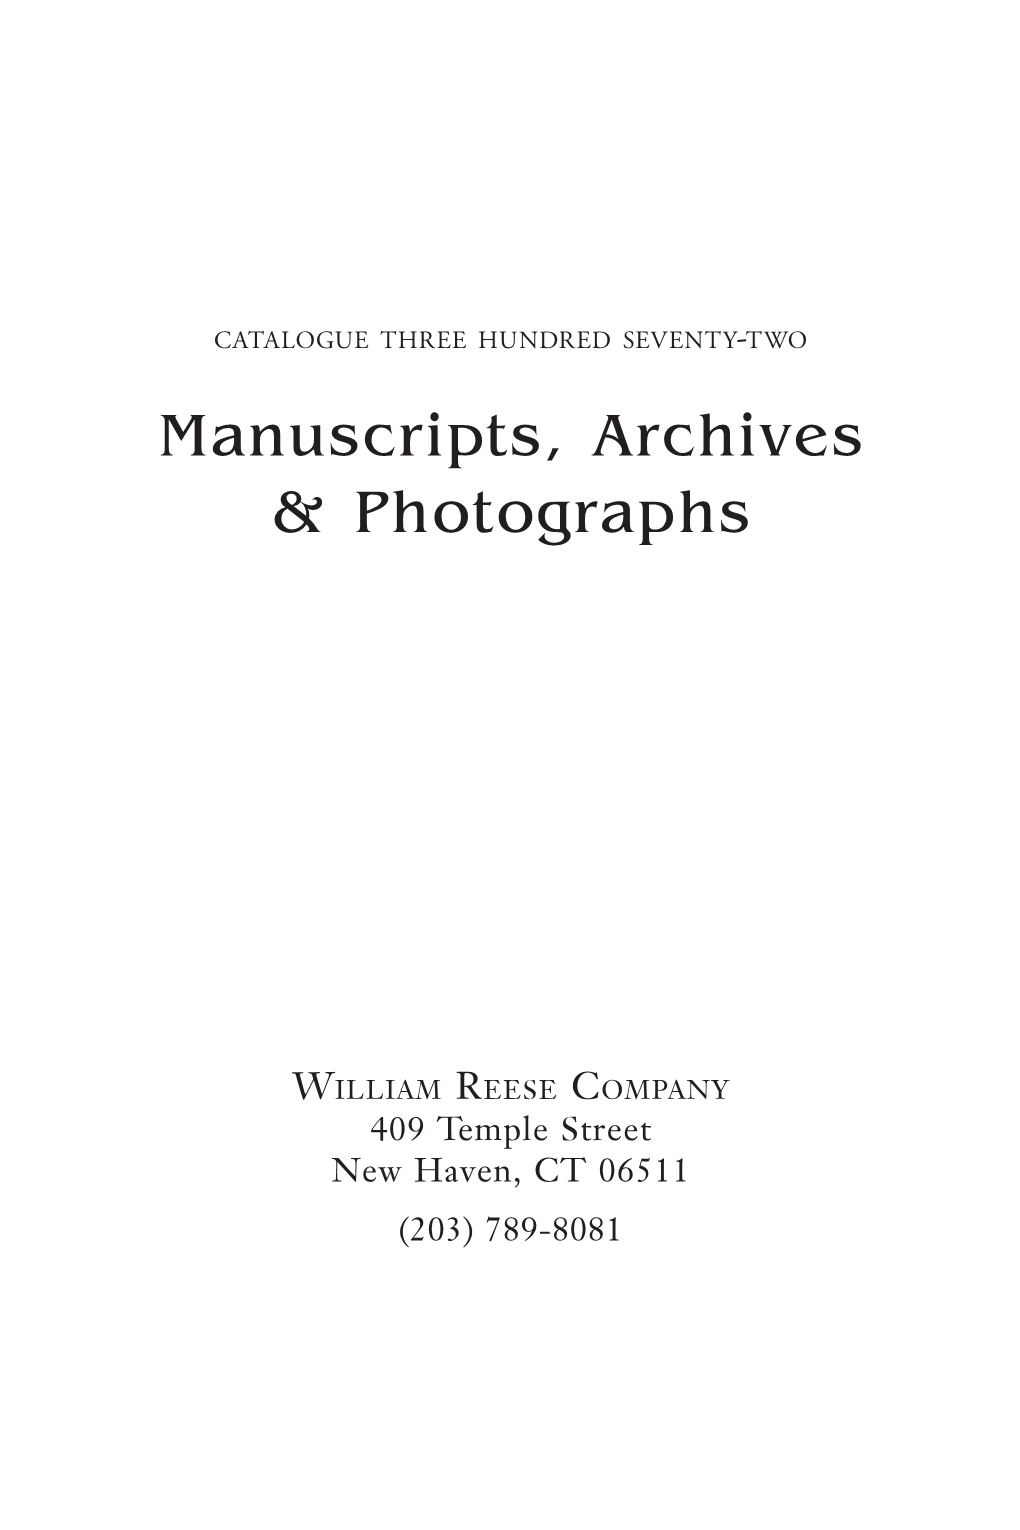 Manuscripts, Archives & Photographs